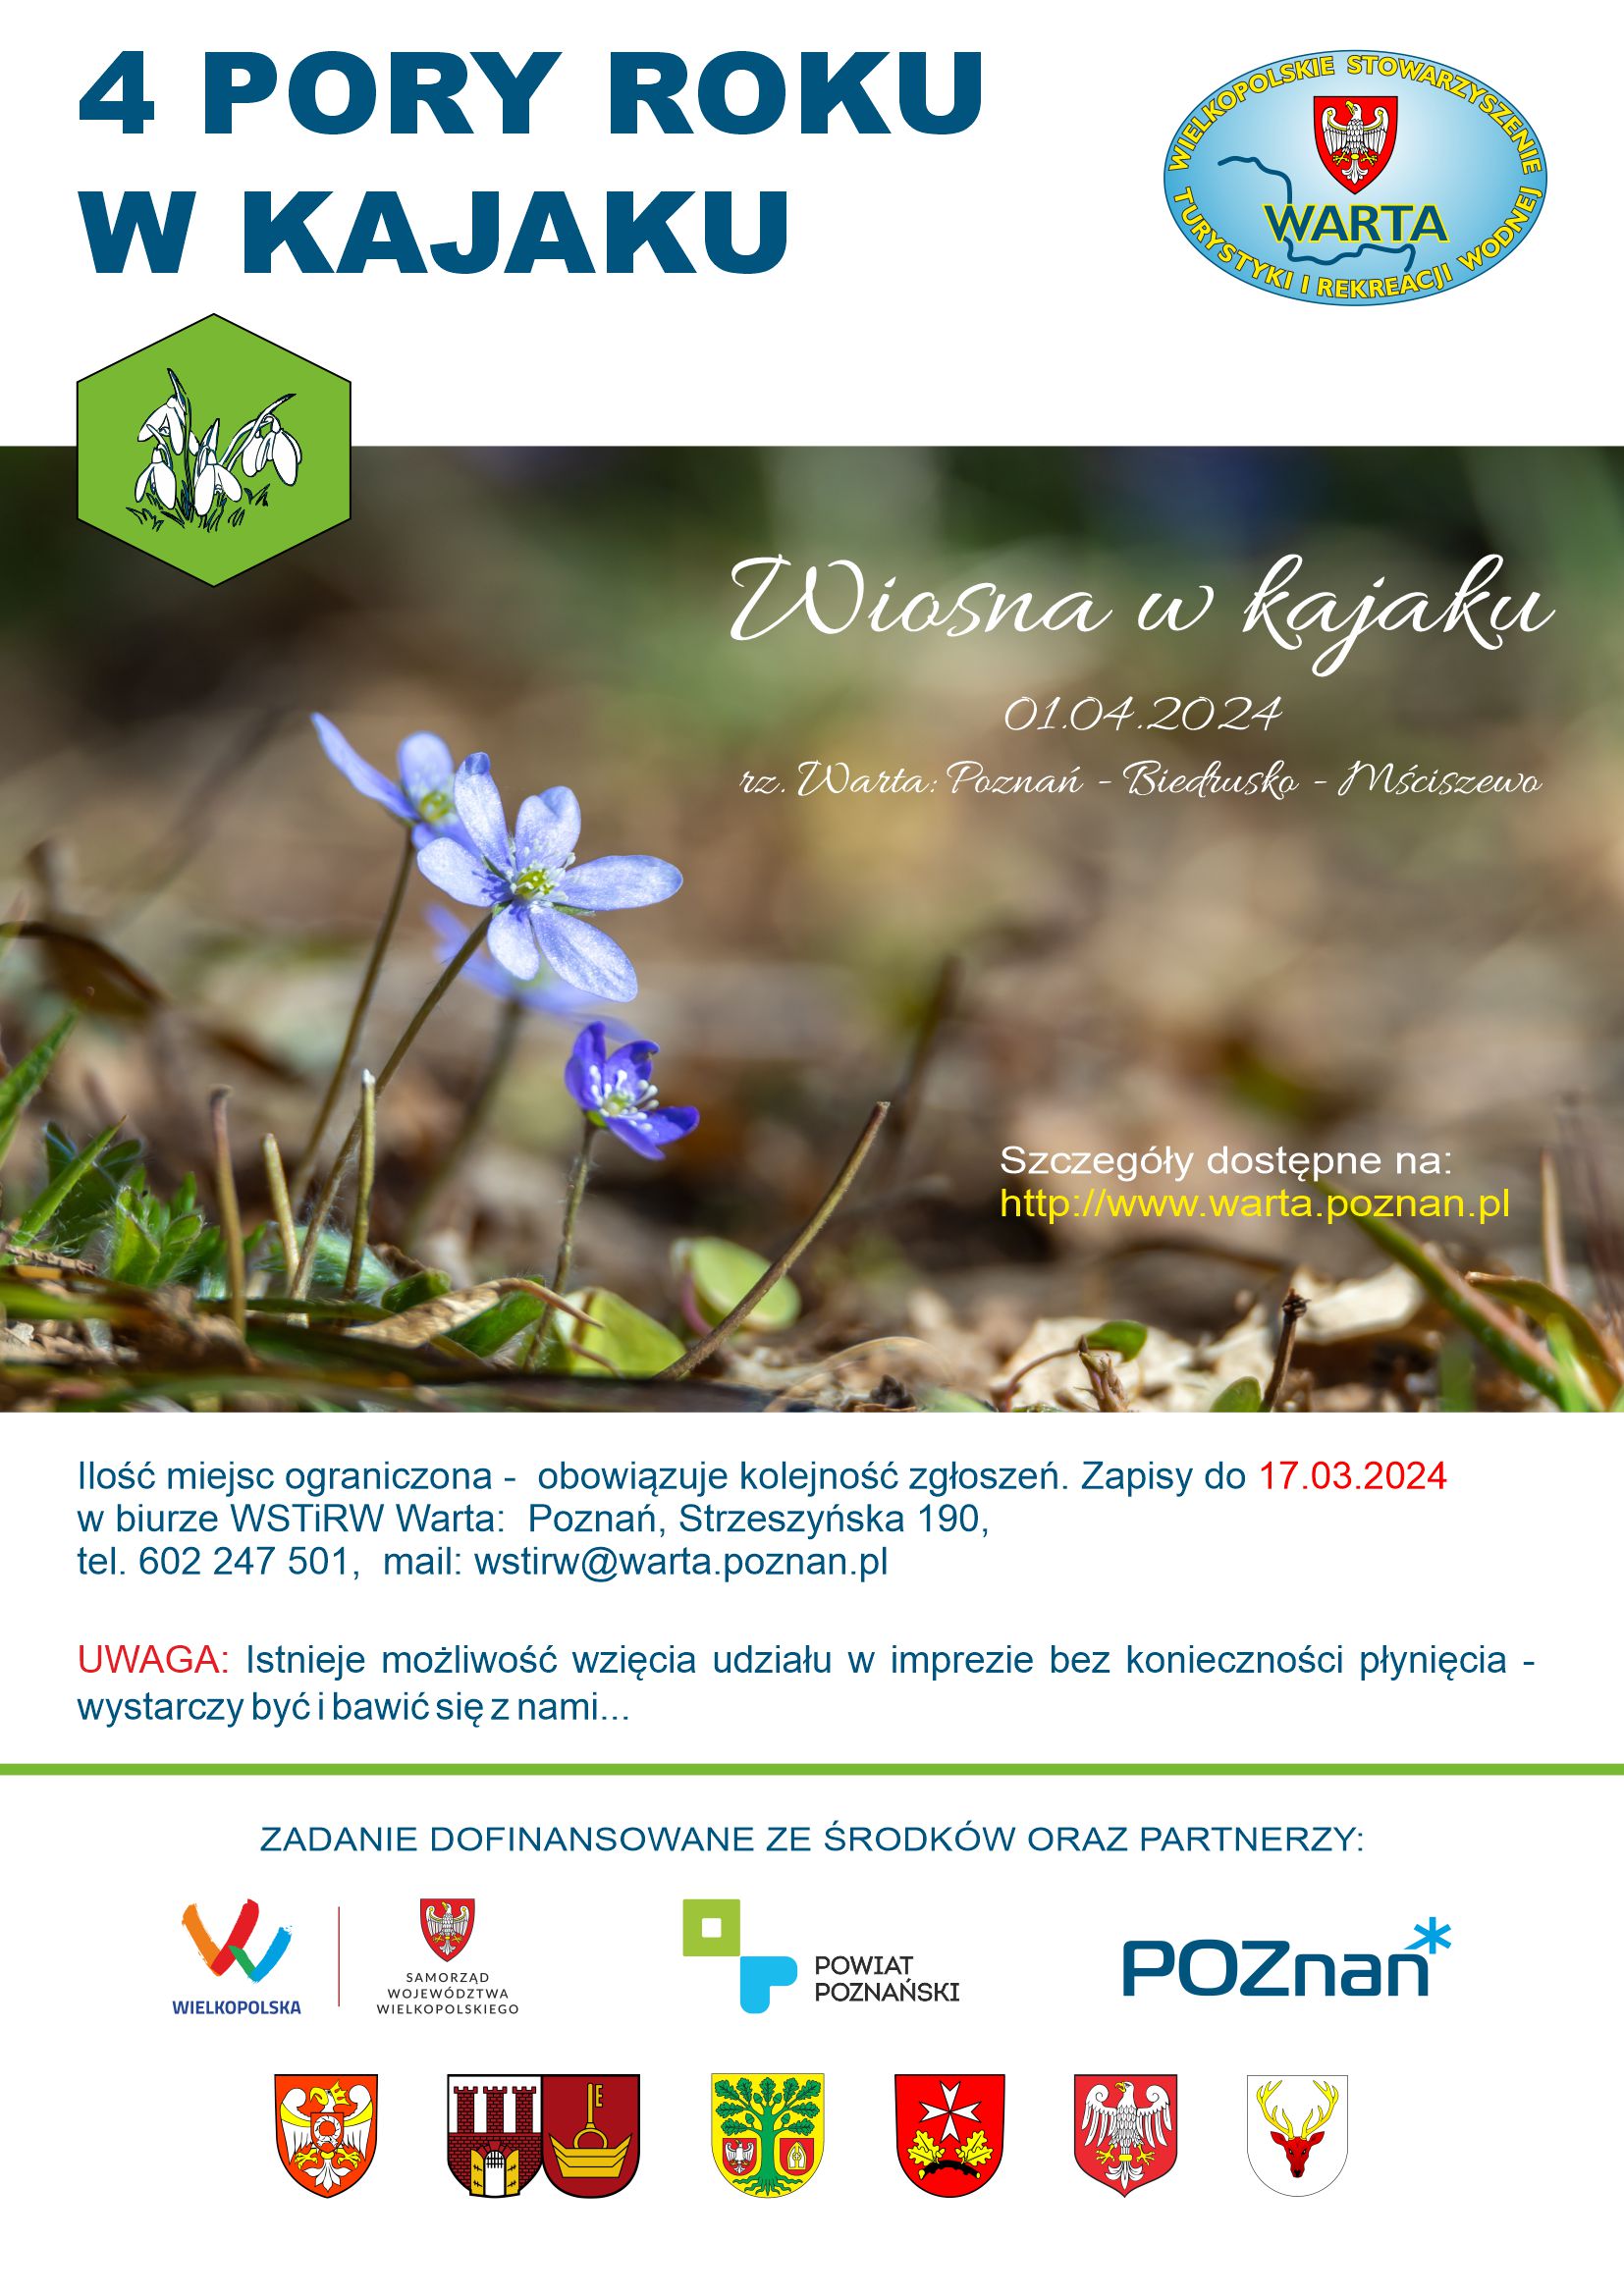 4 pory roku w kajaku, wiosna w kajaku, 1.04.2024, obowiązują zgłoszenia, ilość miejsc ograniczona, www.warta.poznan.pl, na zdjeciu kwitnące wiosenne kwiatki